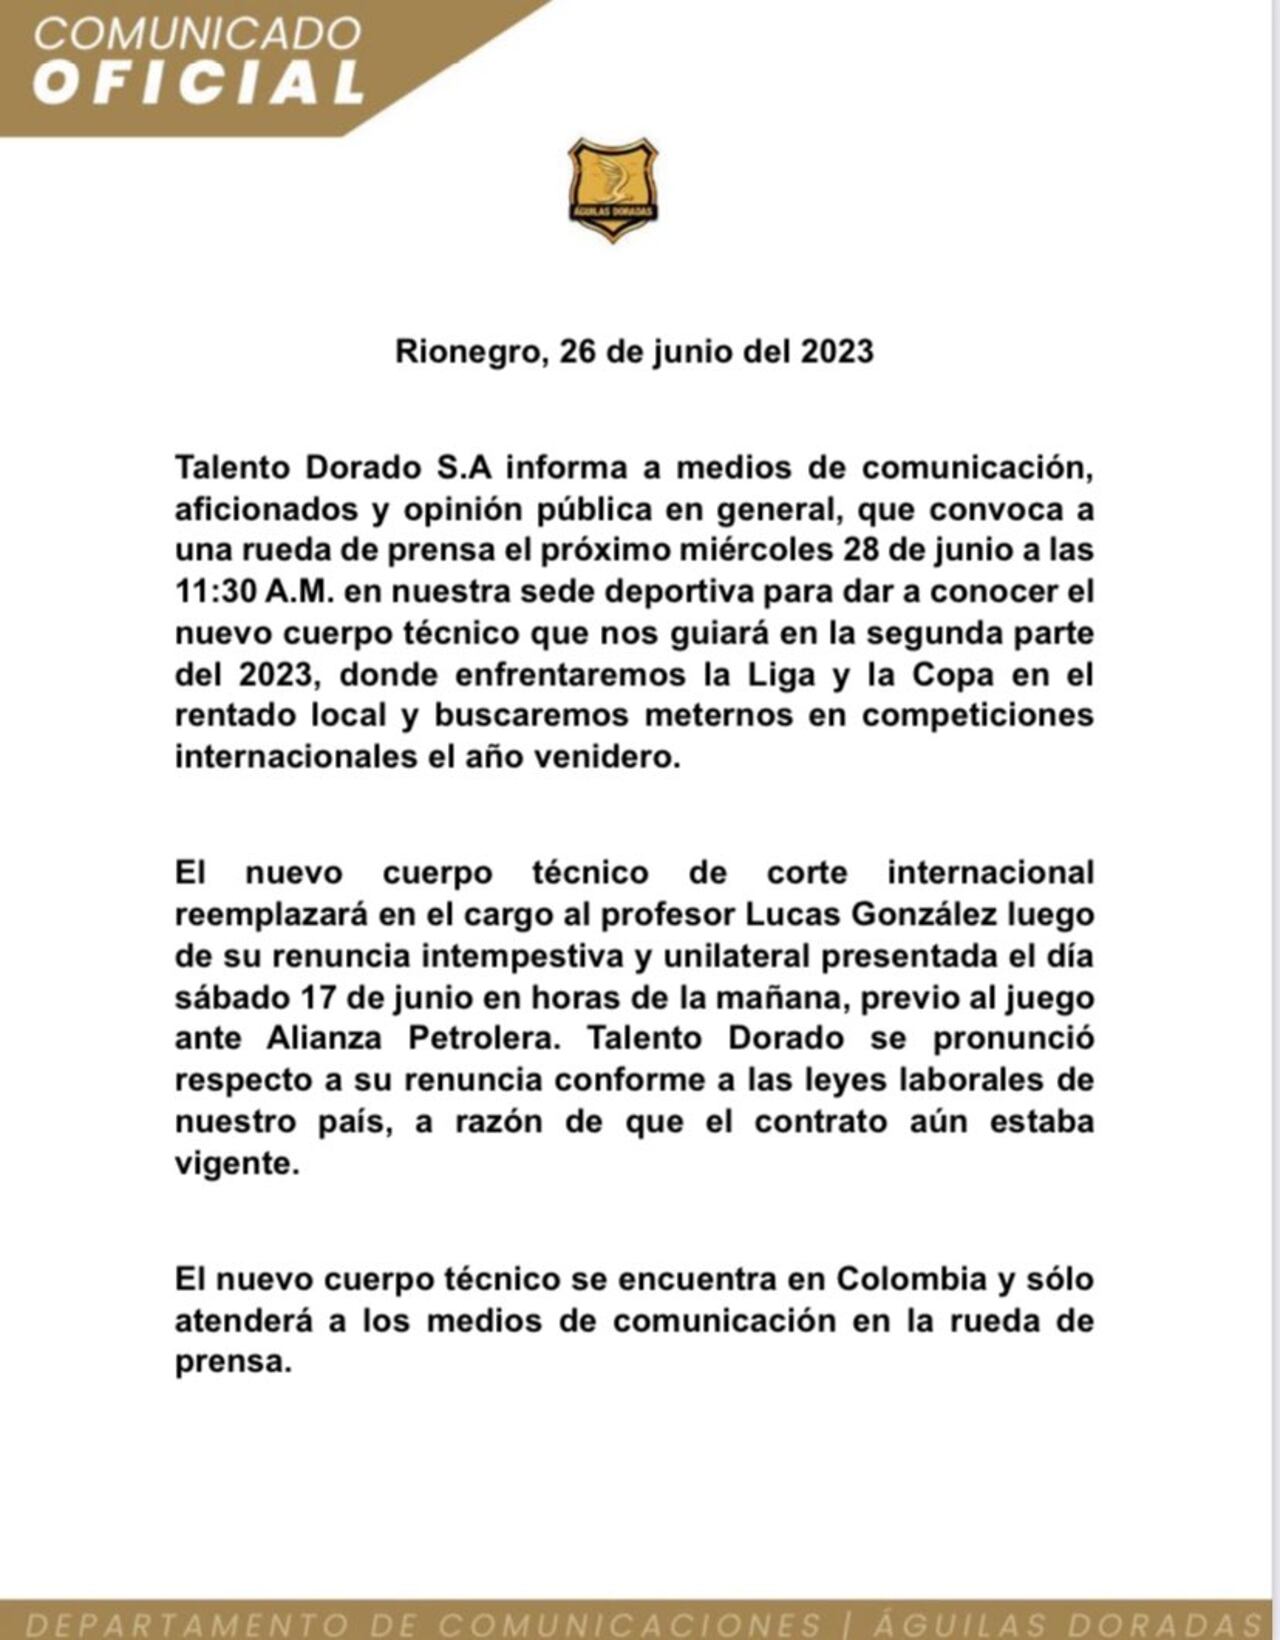 El comunicado del club de Rionegro dando un aviso del nuevo cuerpo técnico, además de la renuncia de Lucas González